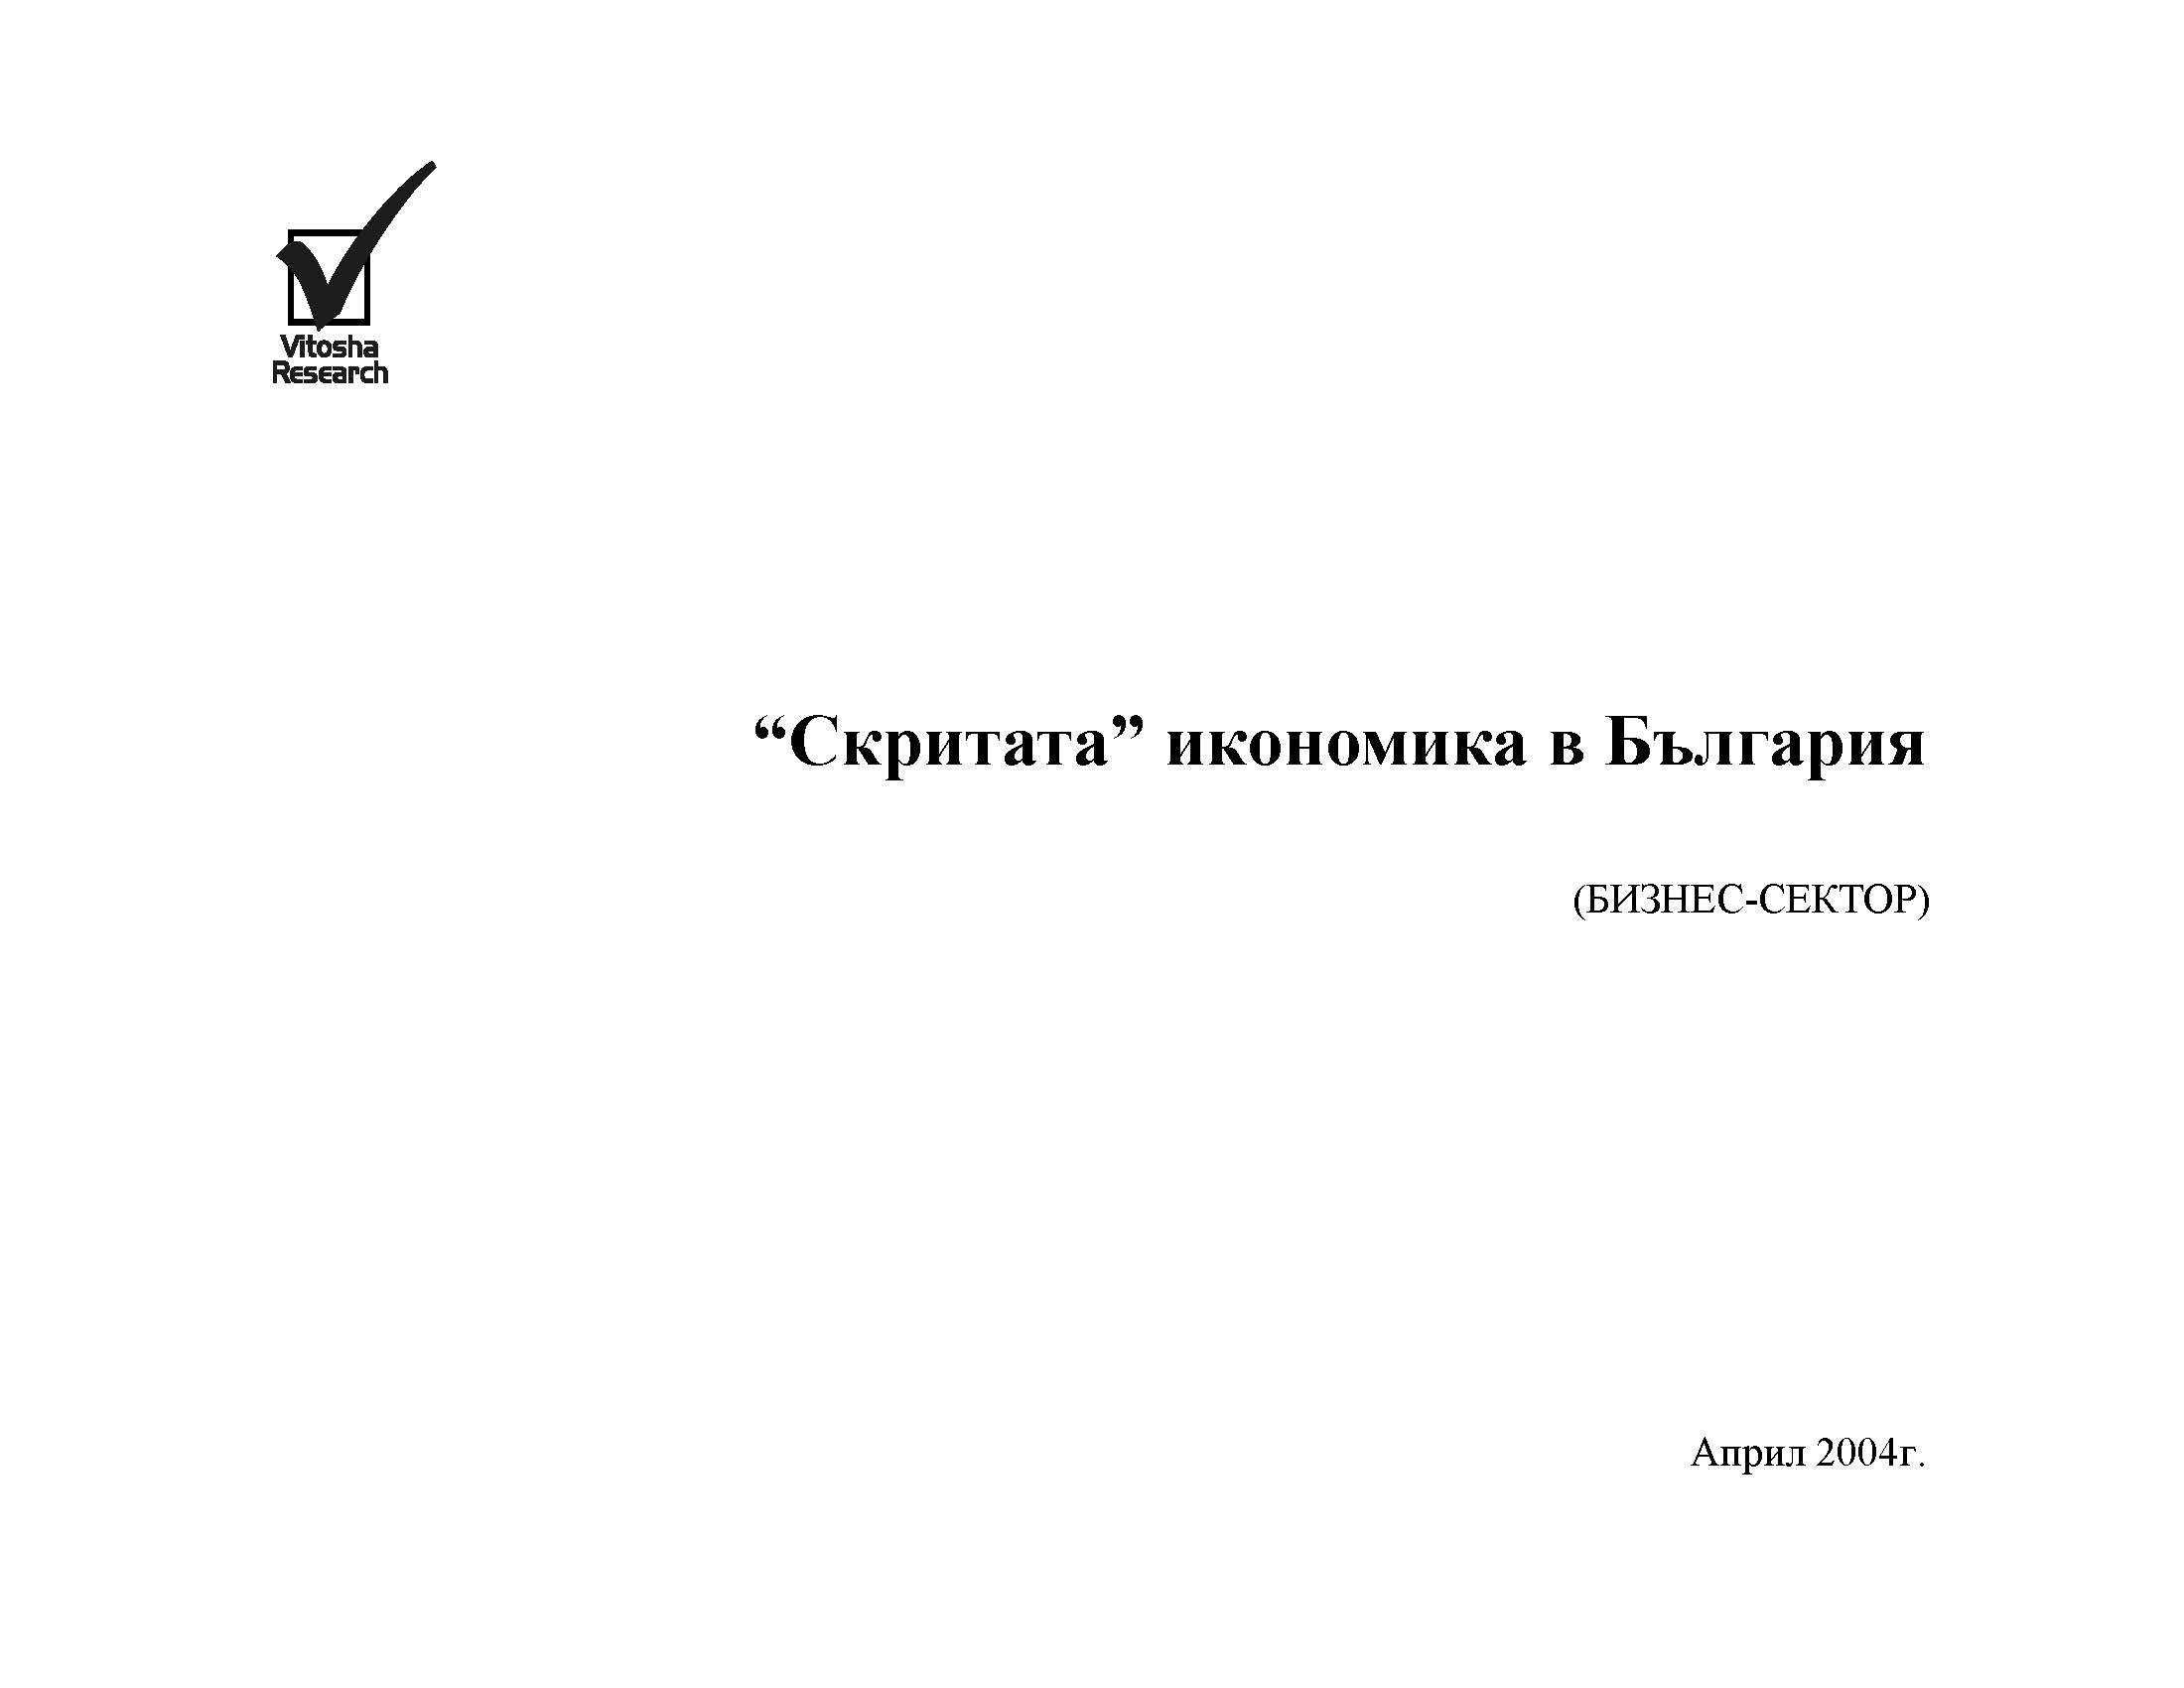 Скритата икономика в България (изследване на бизнес-сектора), Април 2004 г.